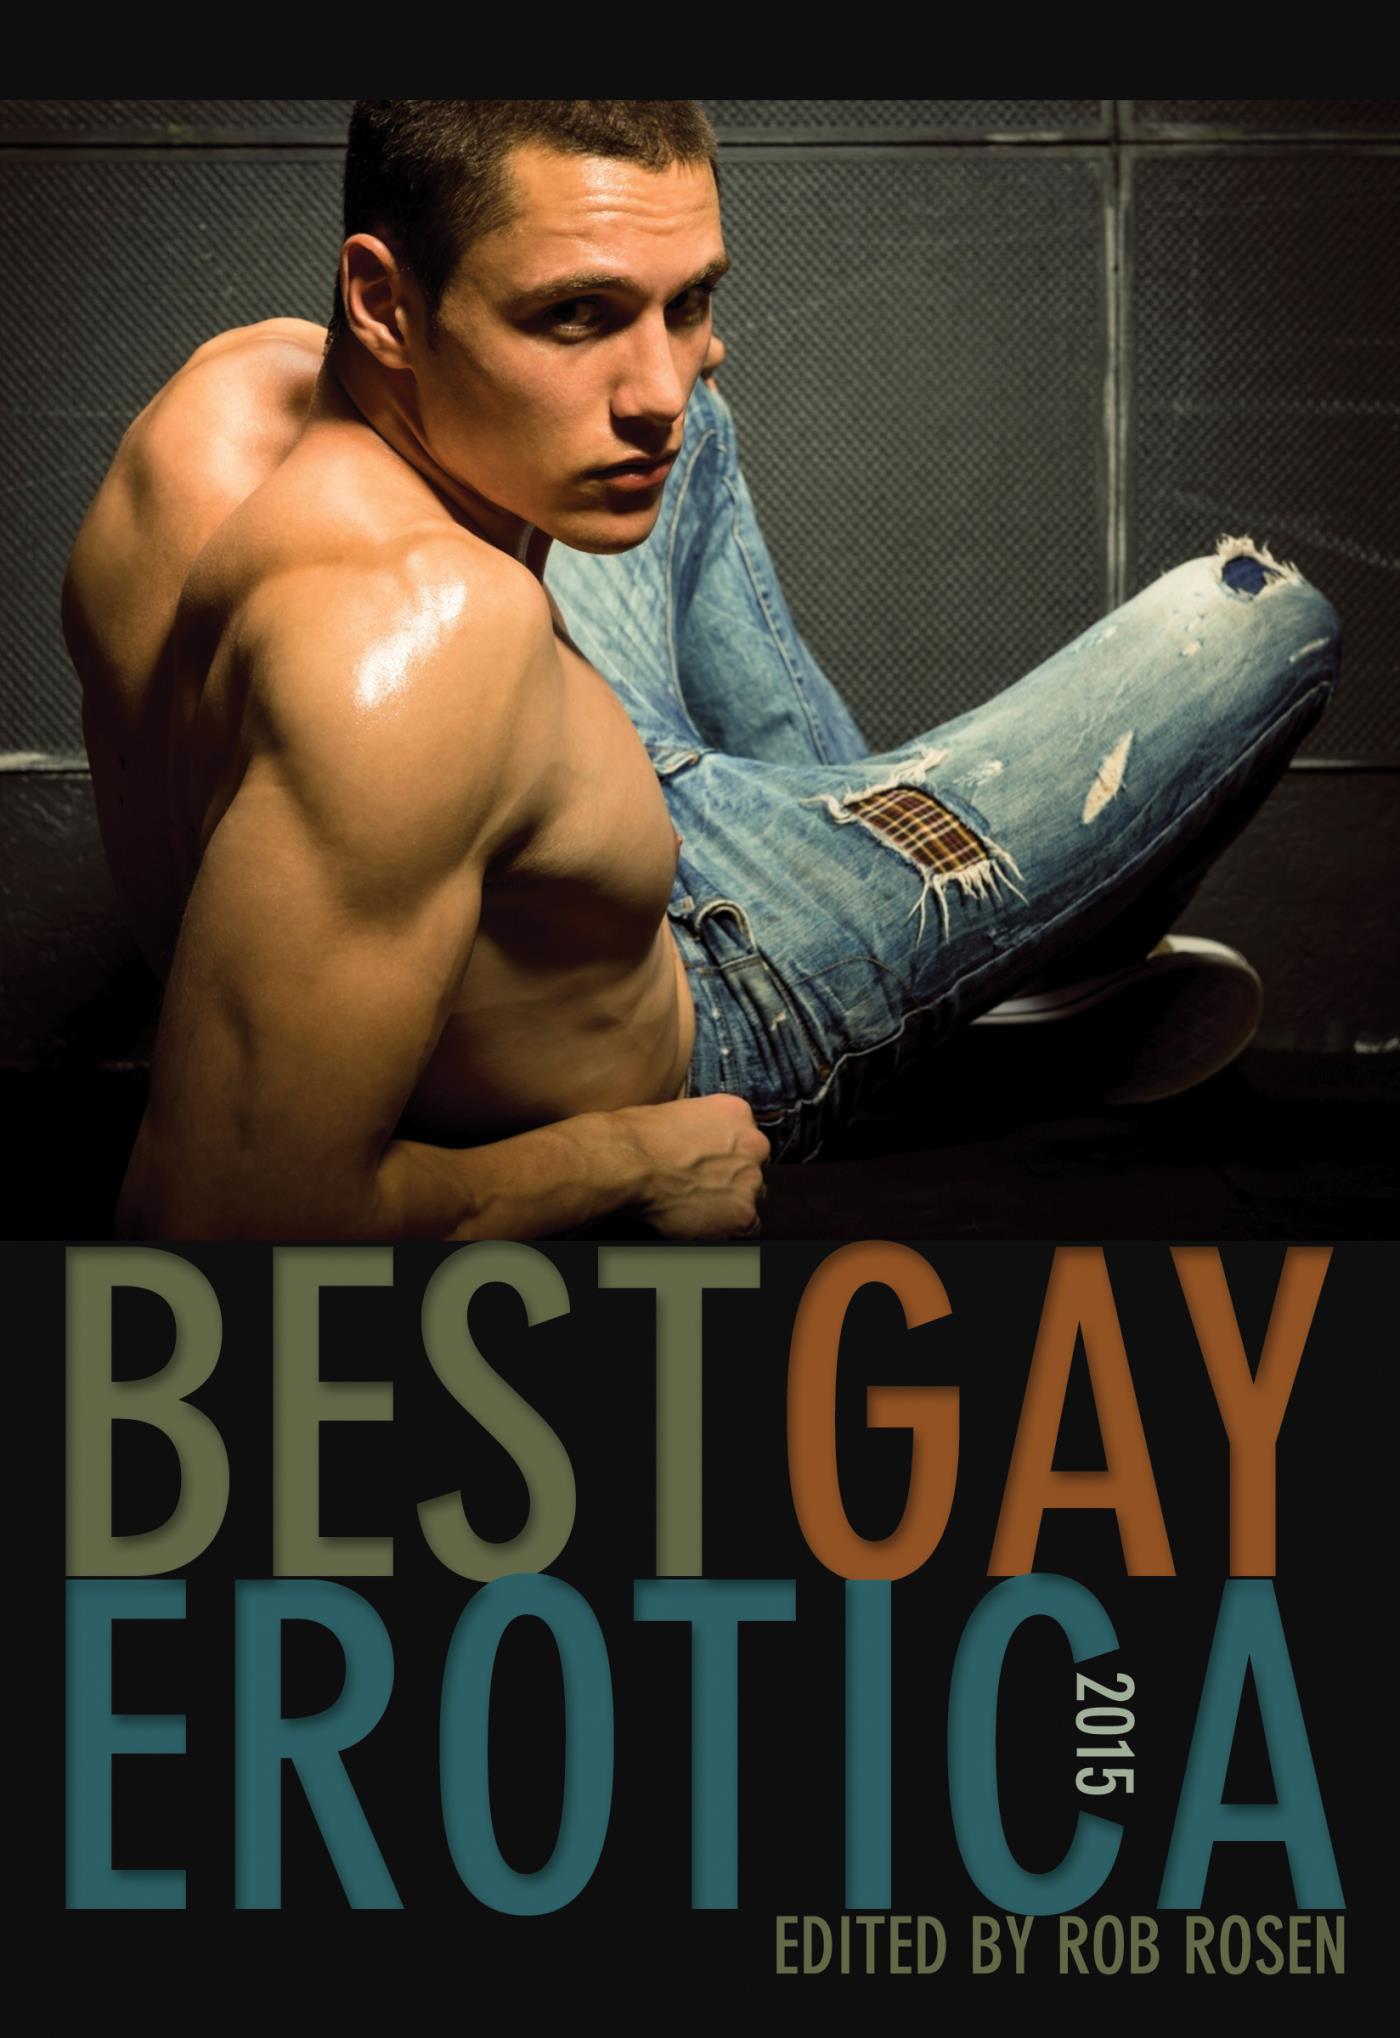 Best Gay Erotica 2015